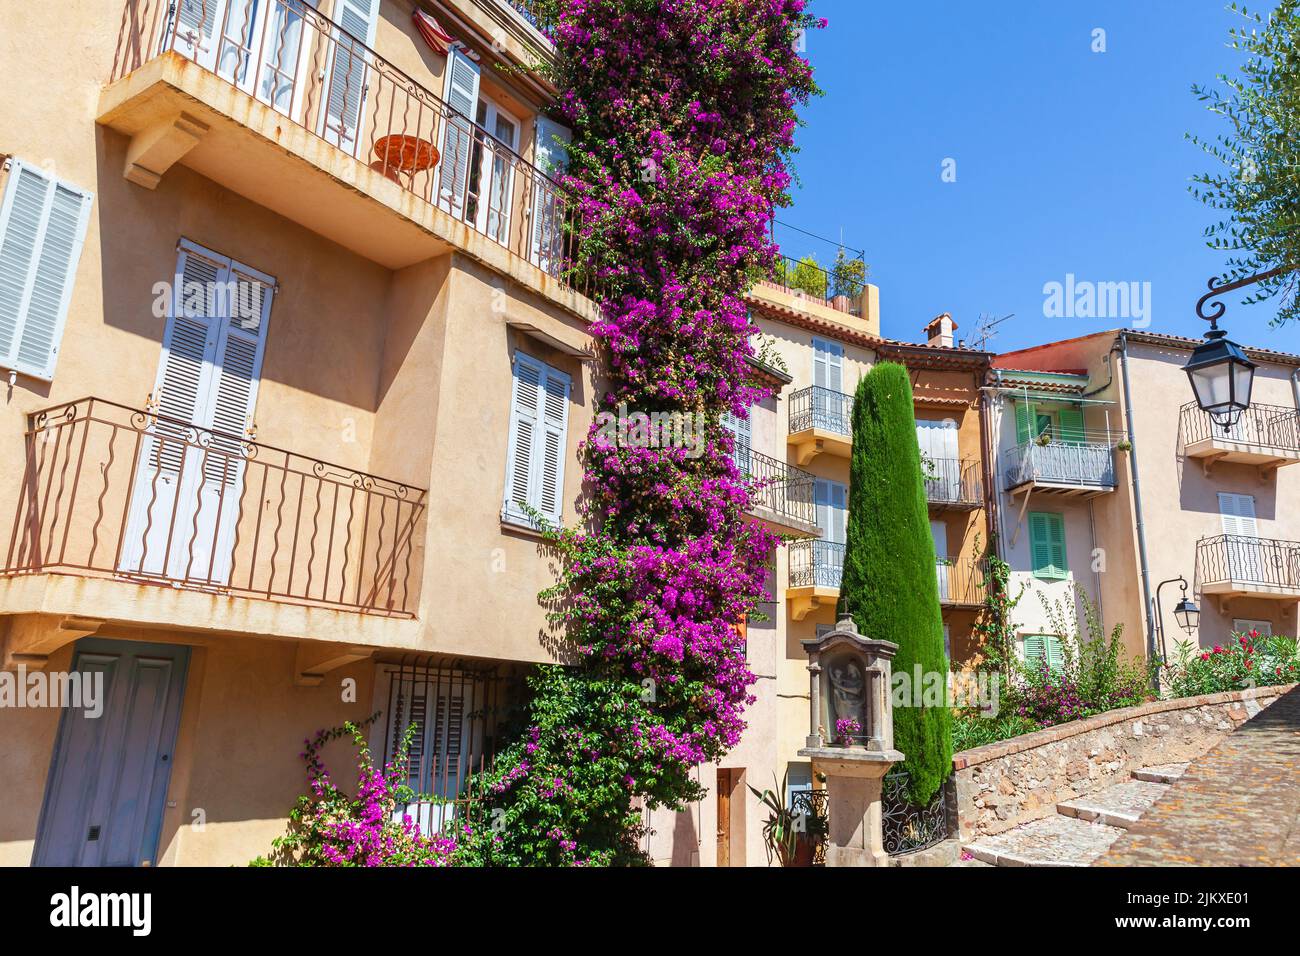 Vista de la calle de Cannes, Francia. Coloridas casas residenciales están en una calle estrecha en un día soleado Foto de stock